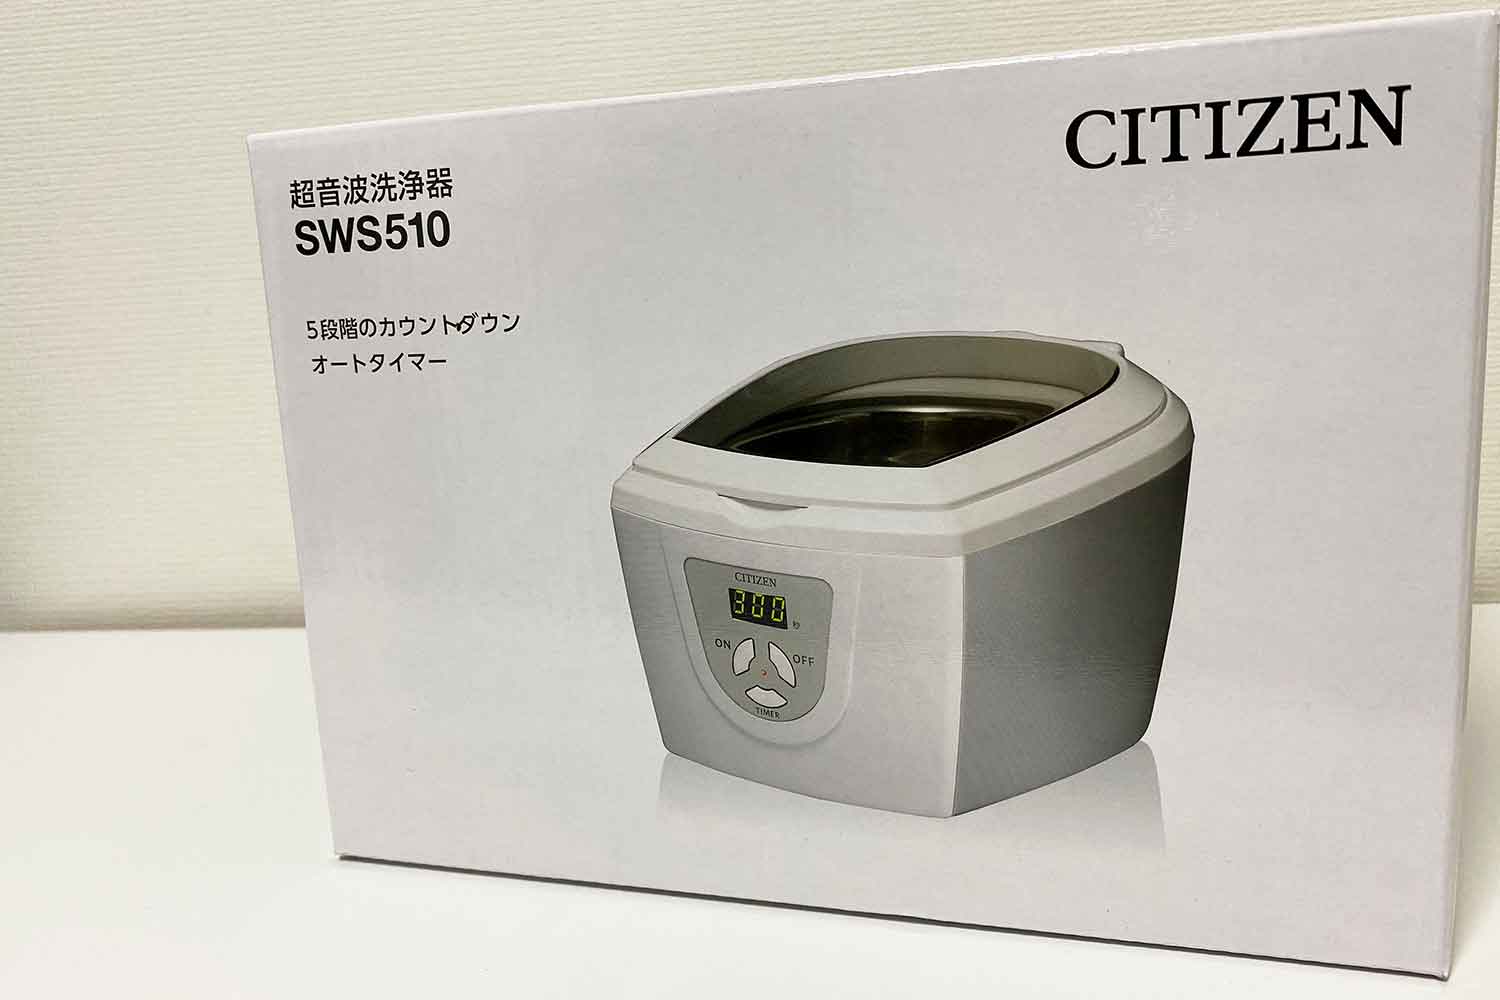 シチズン超音波洗浄機 SWS510を買った感想「一家に一台あると便利」